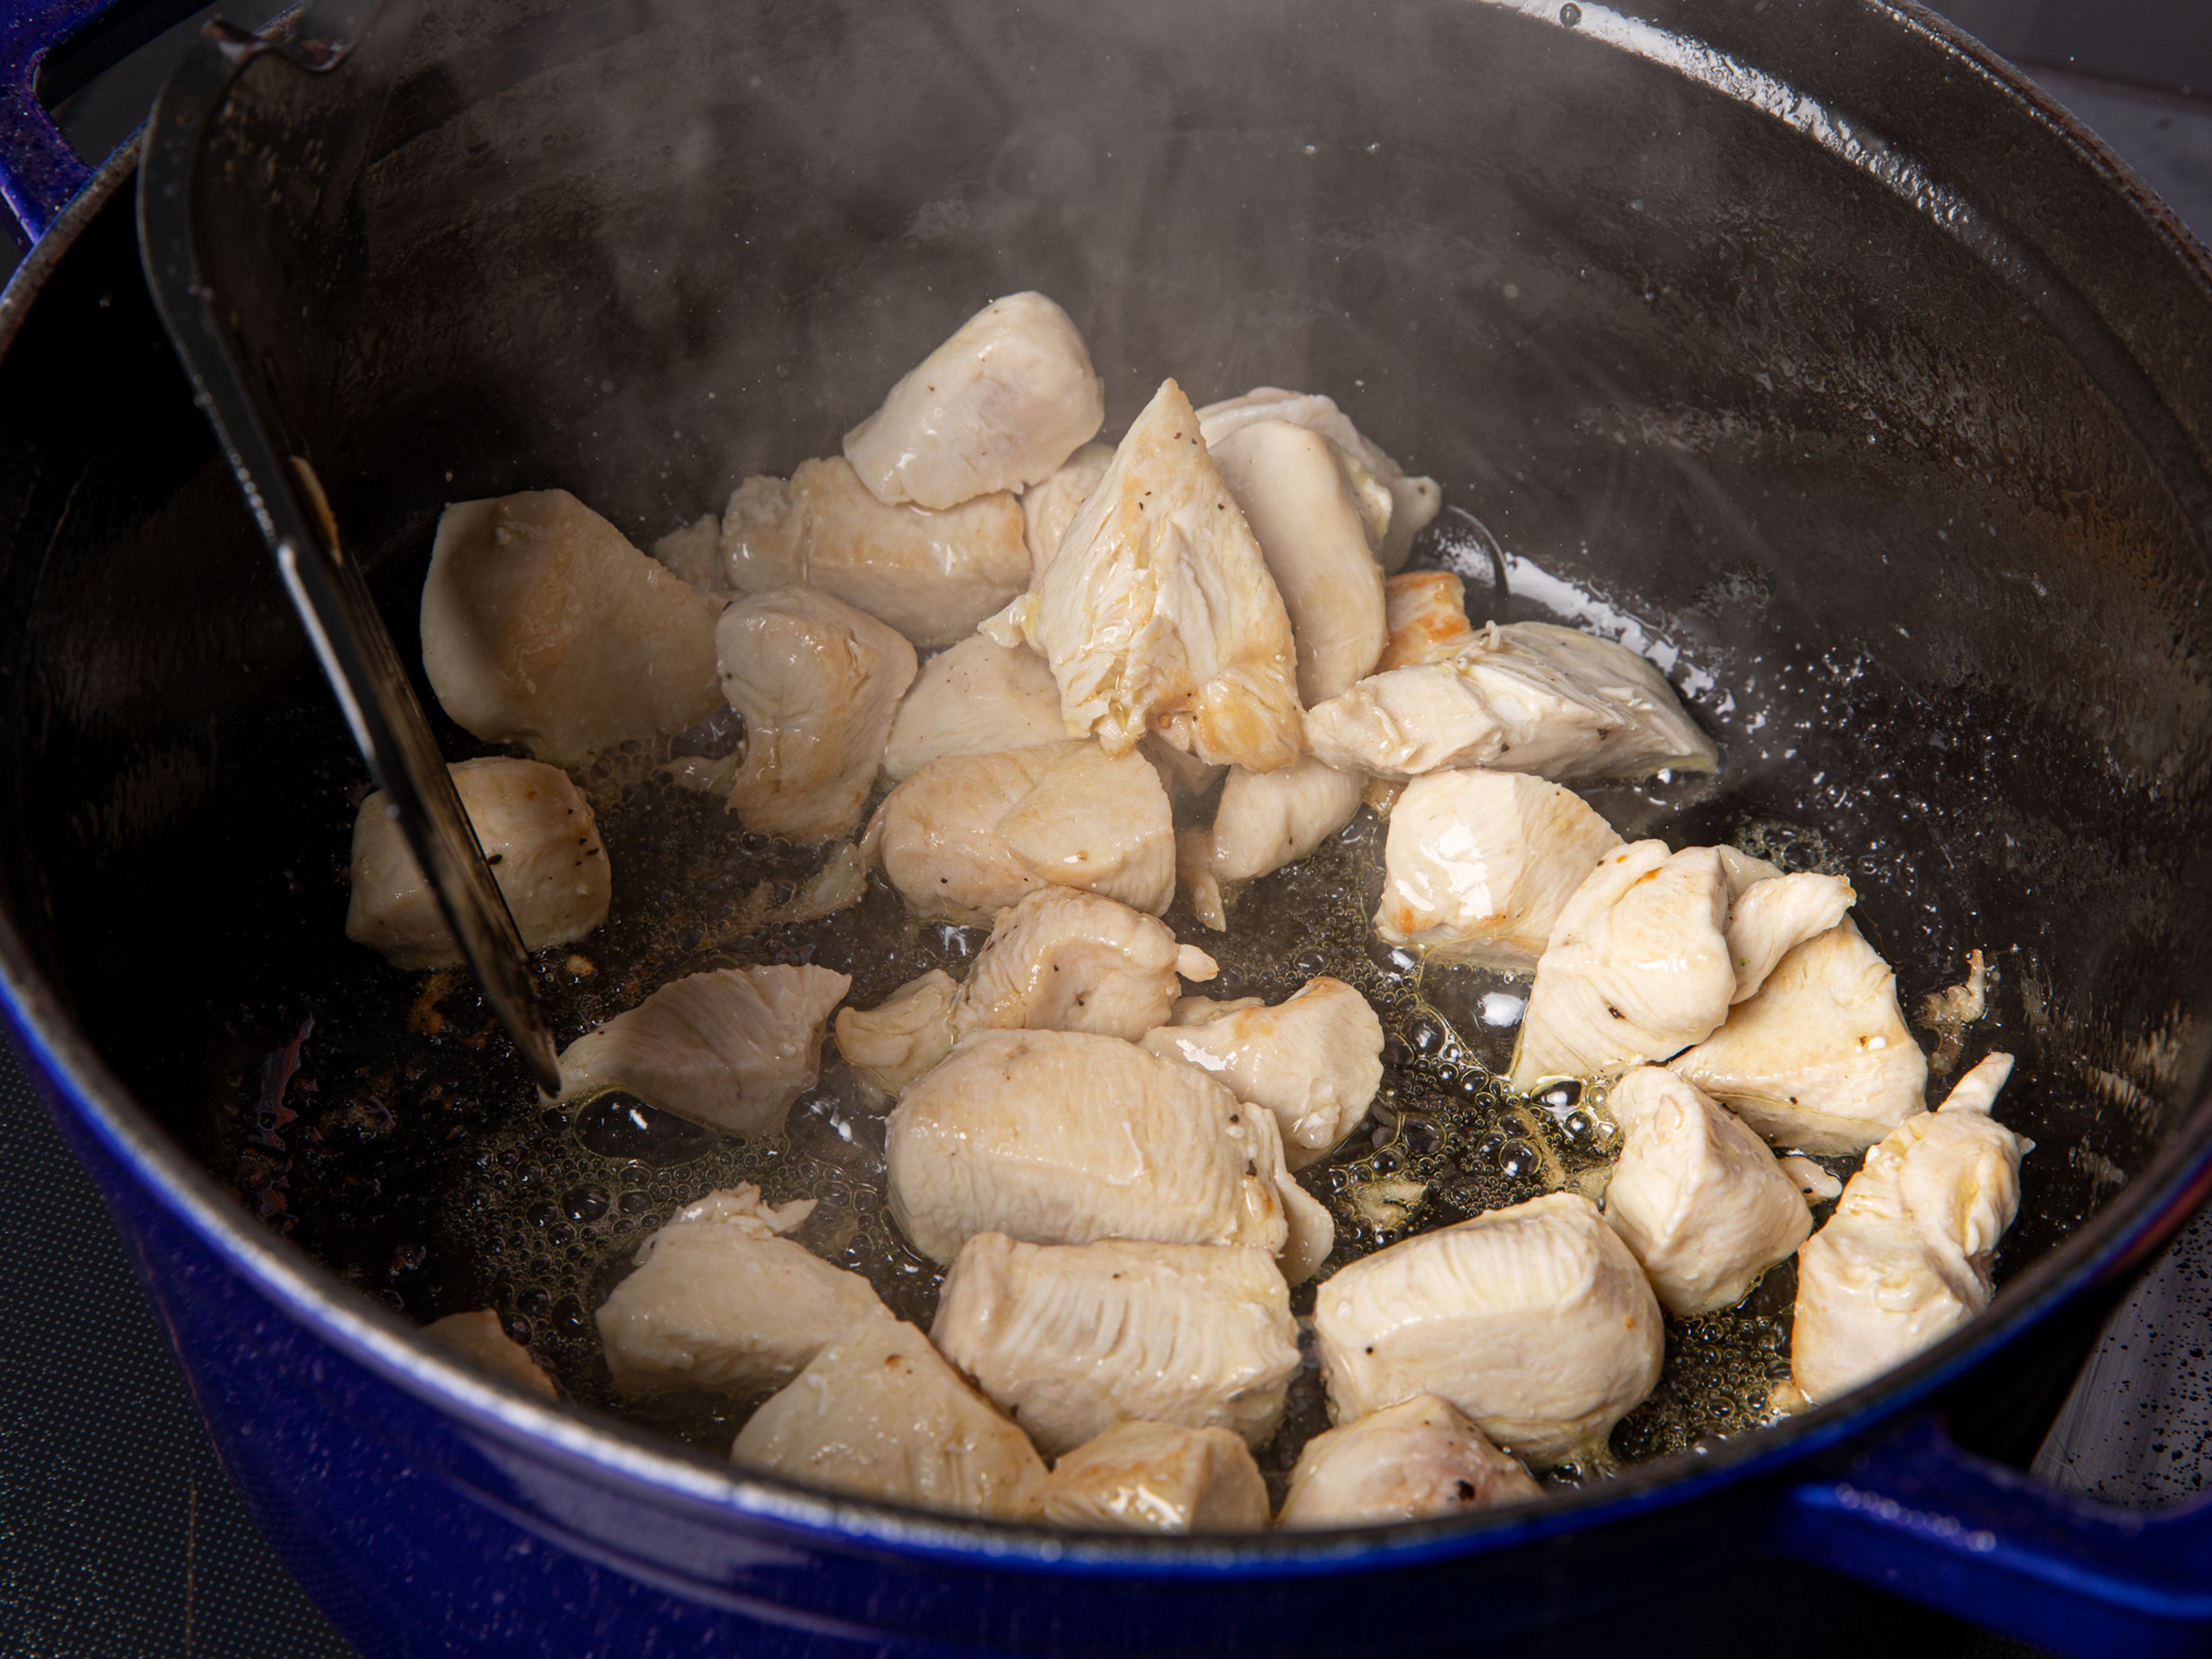 Das gewürfelte Hähnchenfleisch mit dem Cajun-Gewürz vermischen und mit Salz würzen. Das Öl und die Butter in einem großen Topf erhitzen. Das Hähnchen hineingeben und ca. 4 – 5 Min. anbraten, dabei regelmäßig umrühren. Dabei muss das Hähnchen nicht durchgebraten werden, da es später noch weitergart. Hähnchen aus der Pfanne nehmen und in eine Schüssel geben.